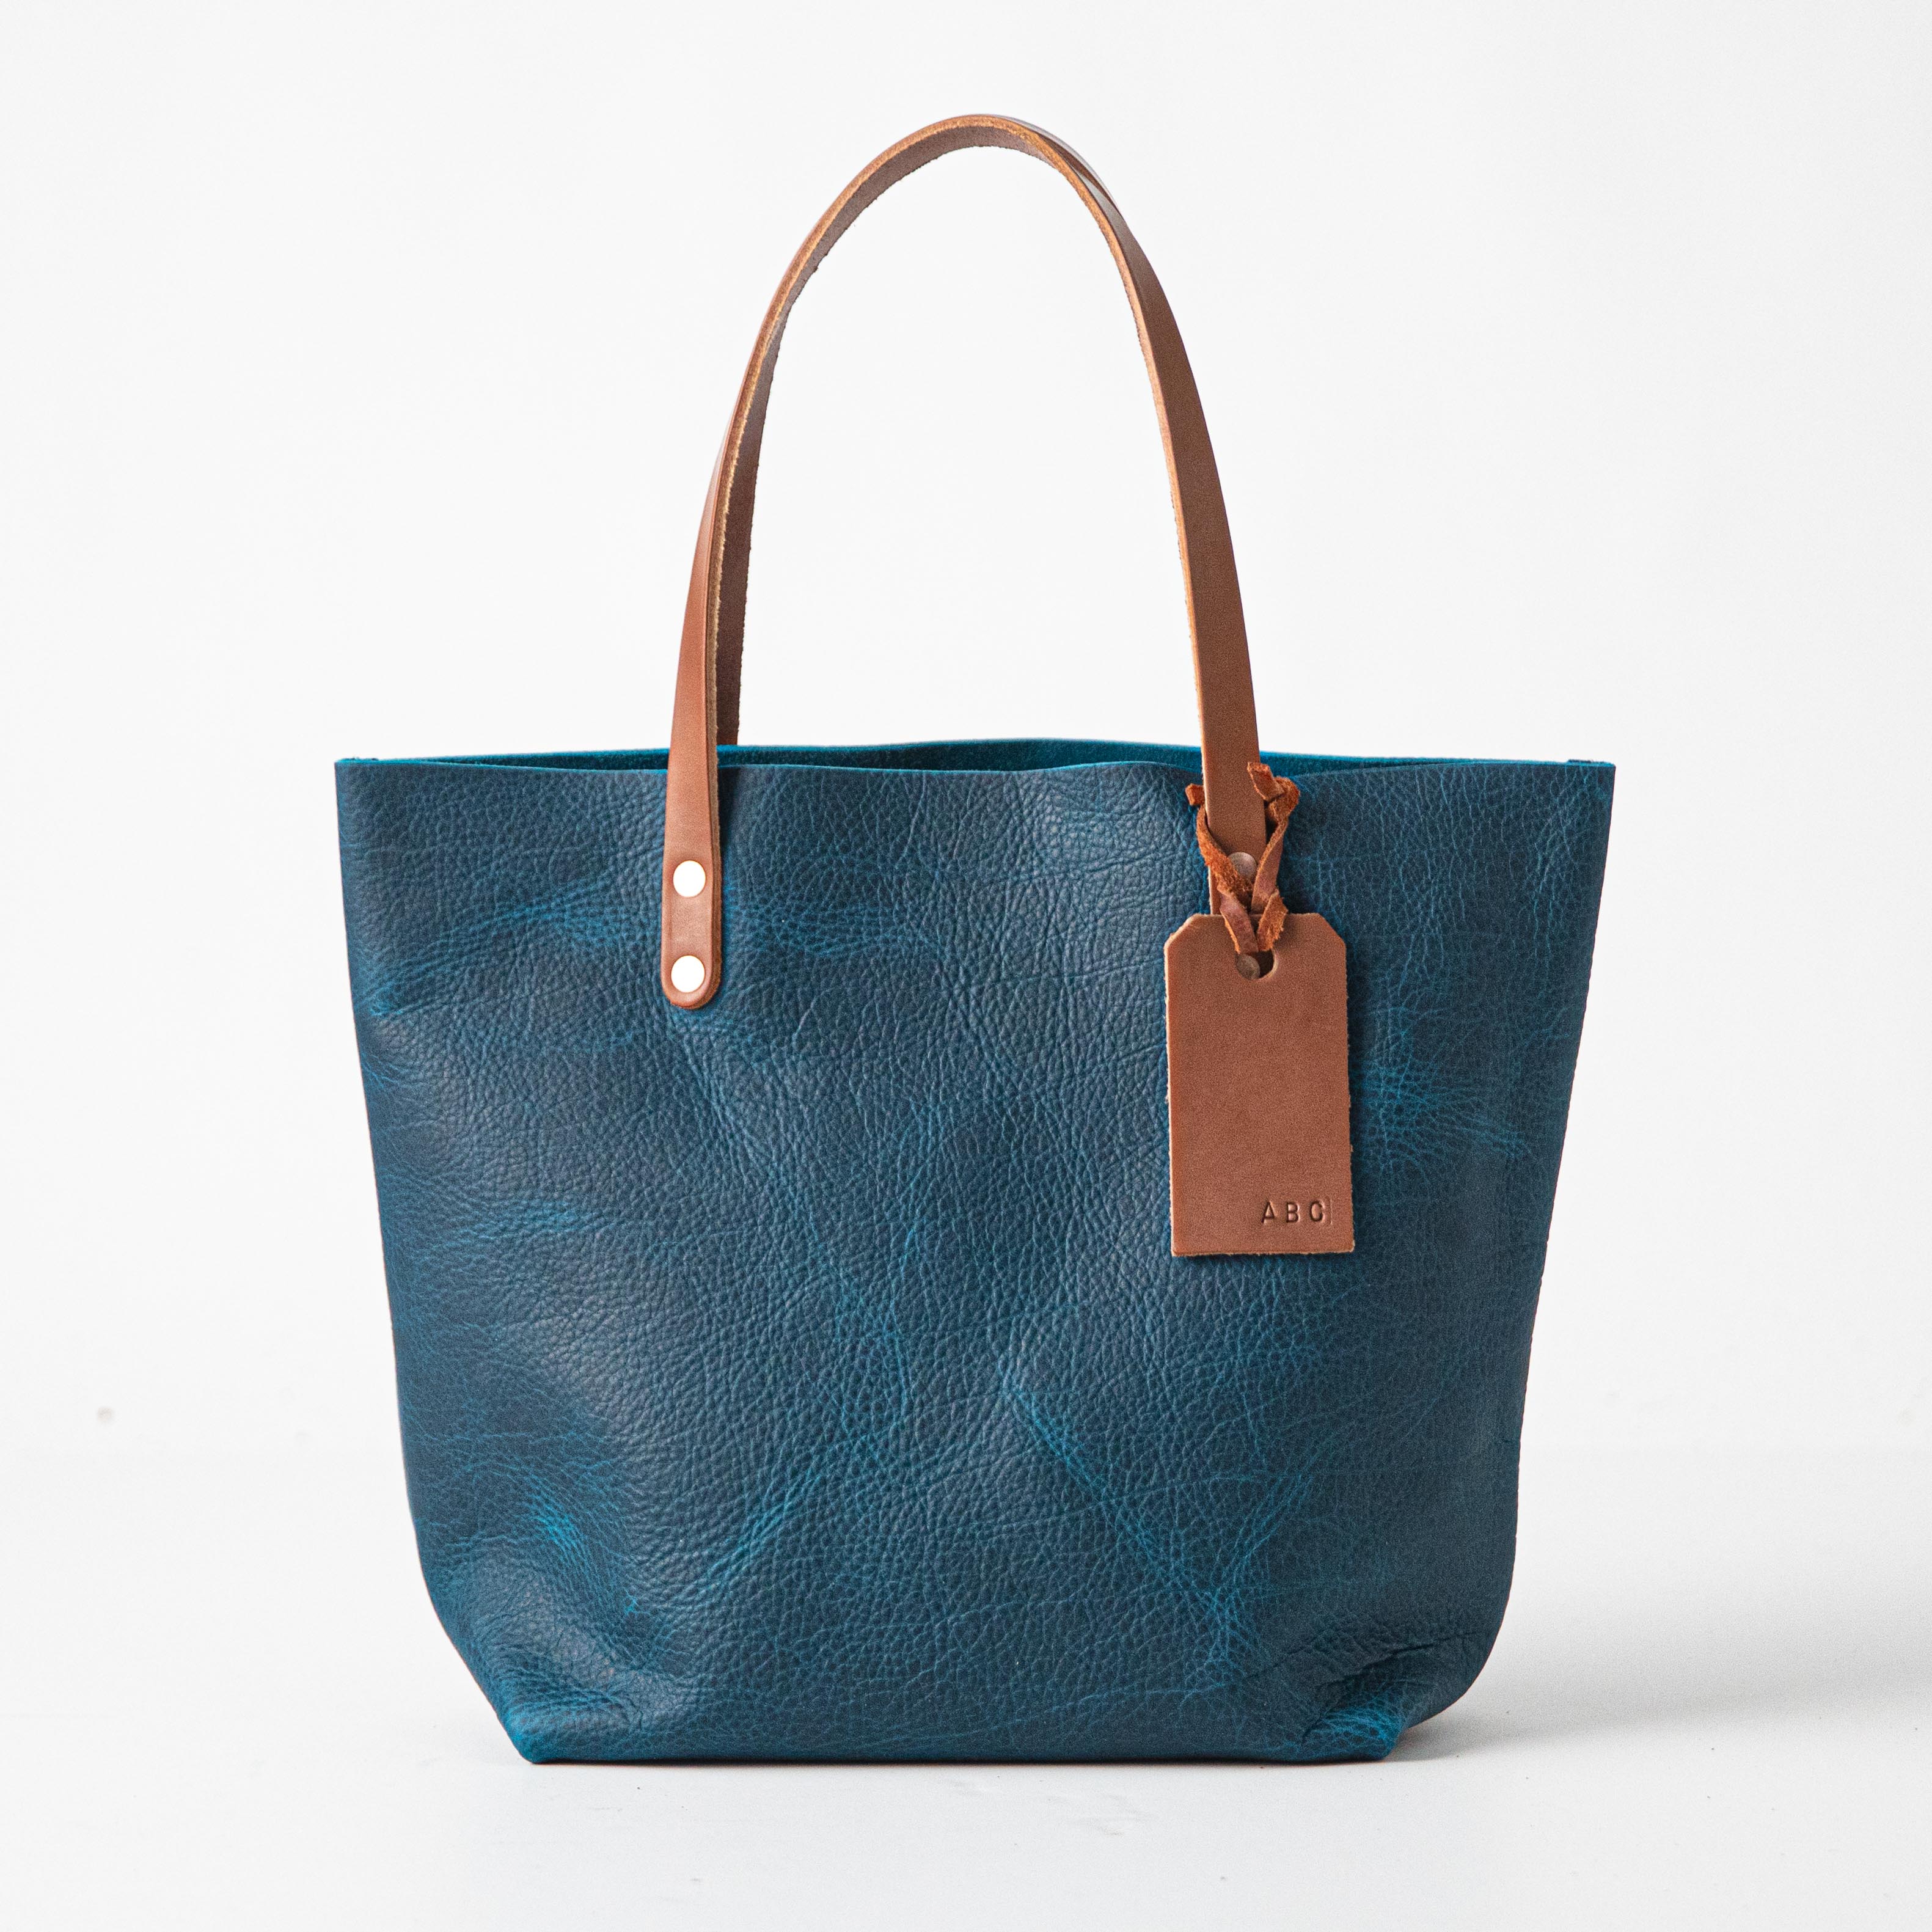 Why should I buy a fake or replica designer handbags? - Quora